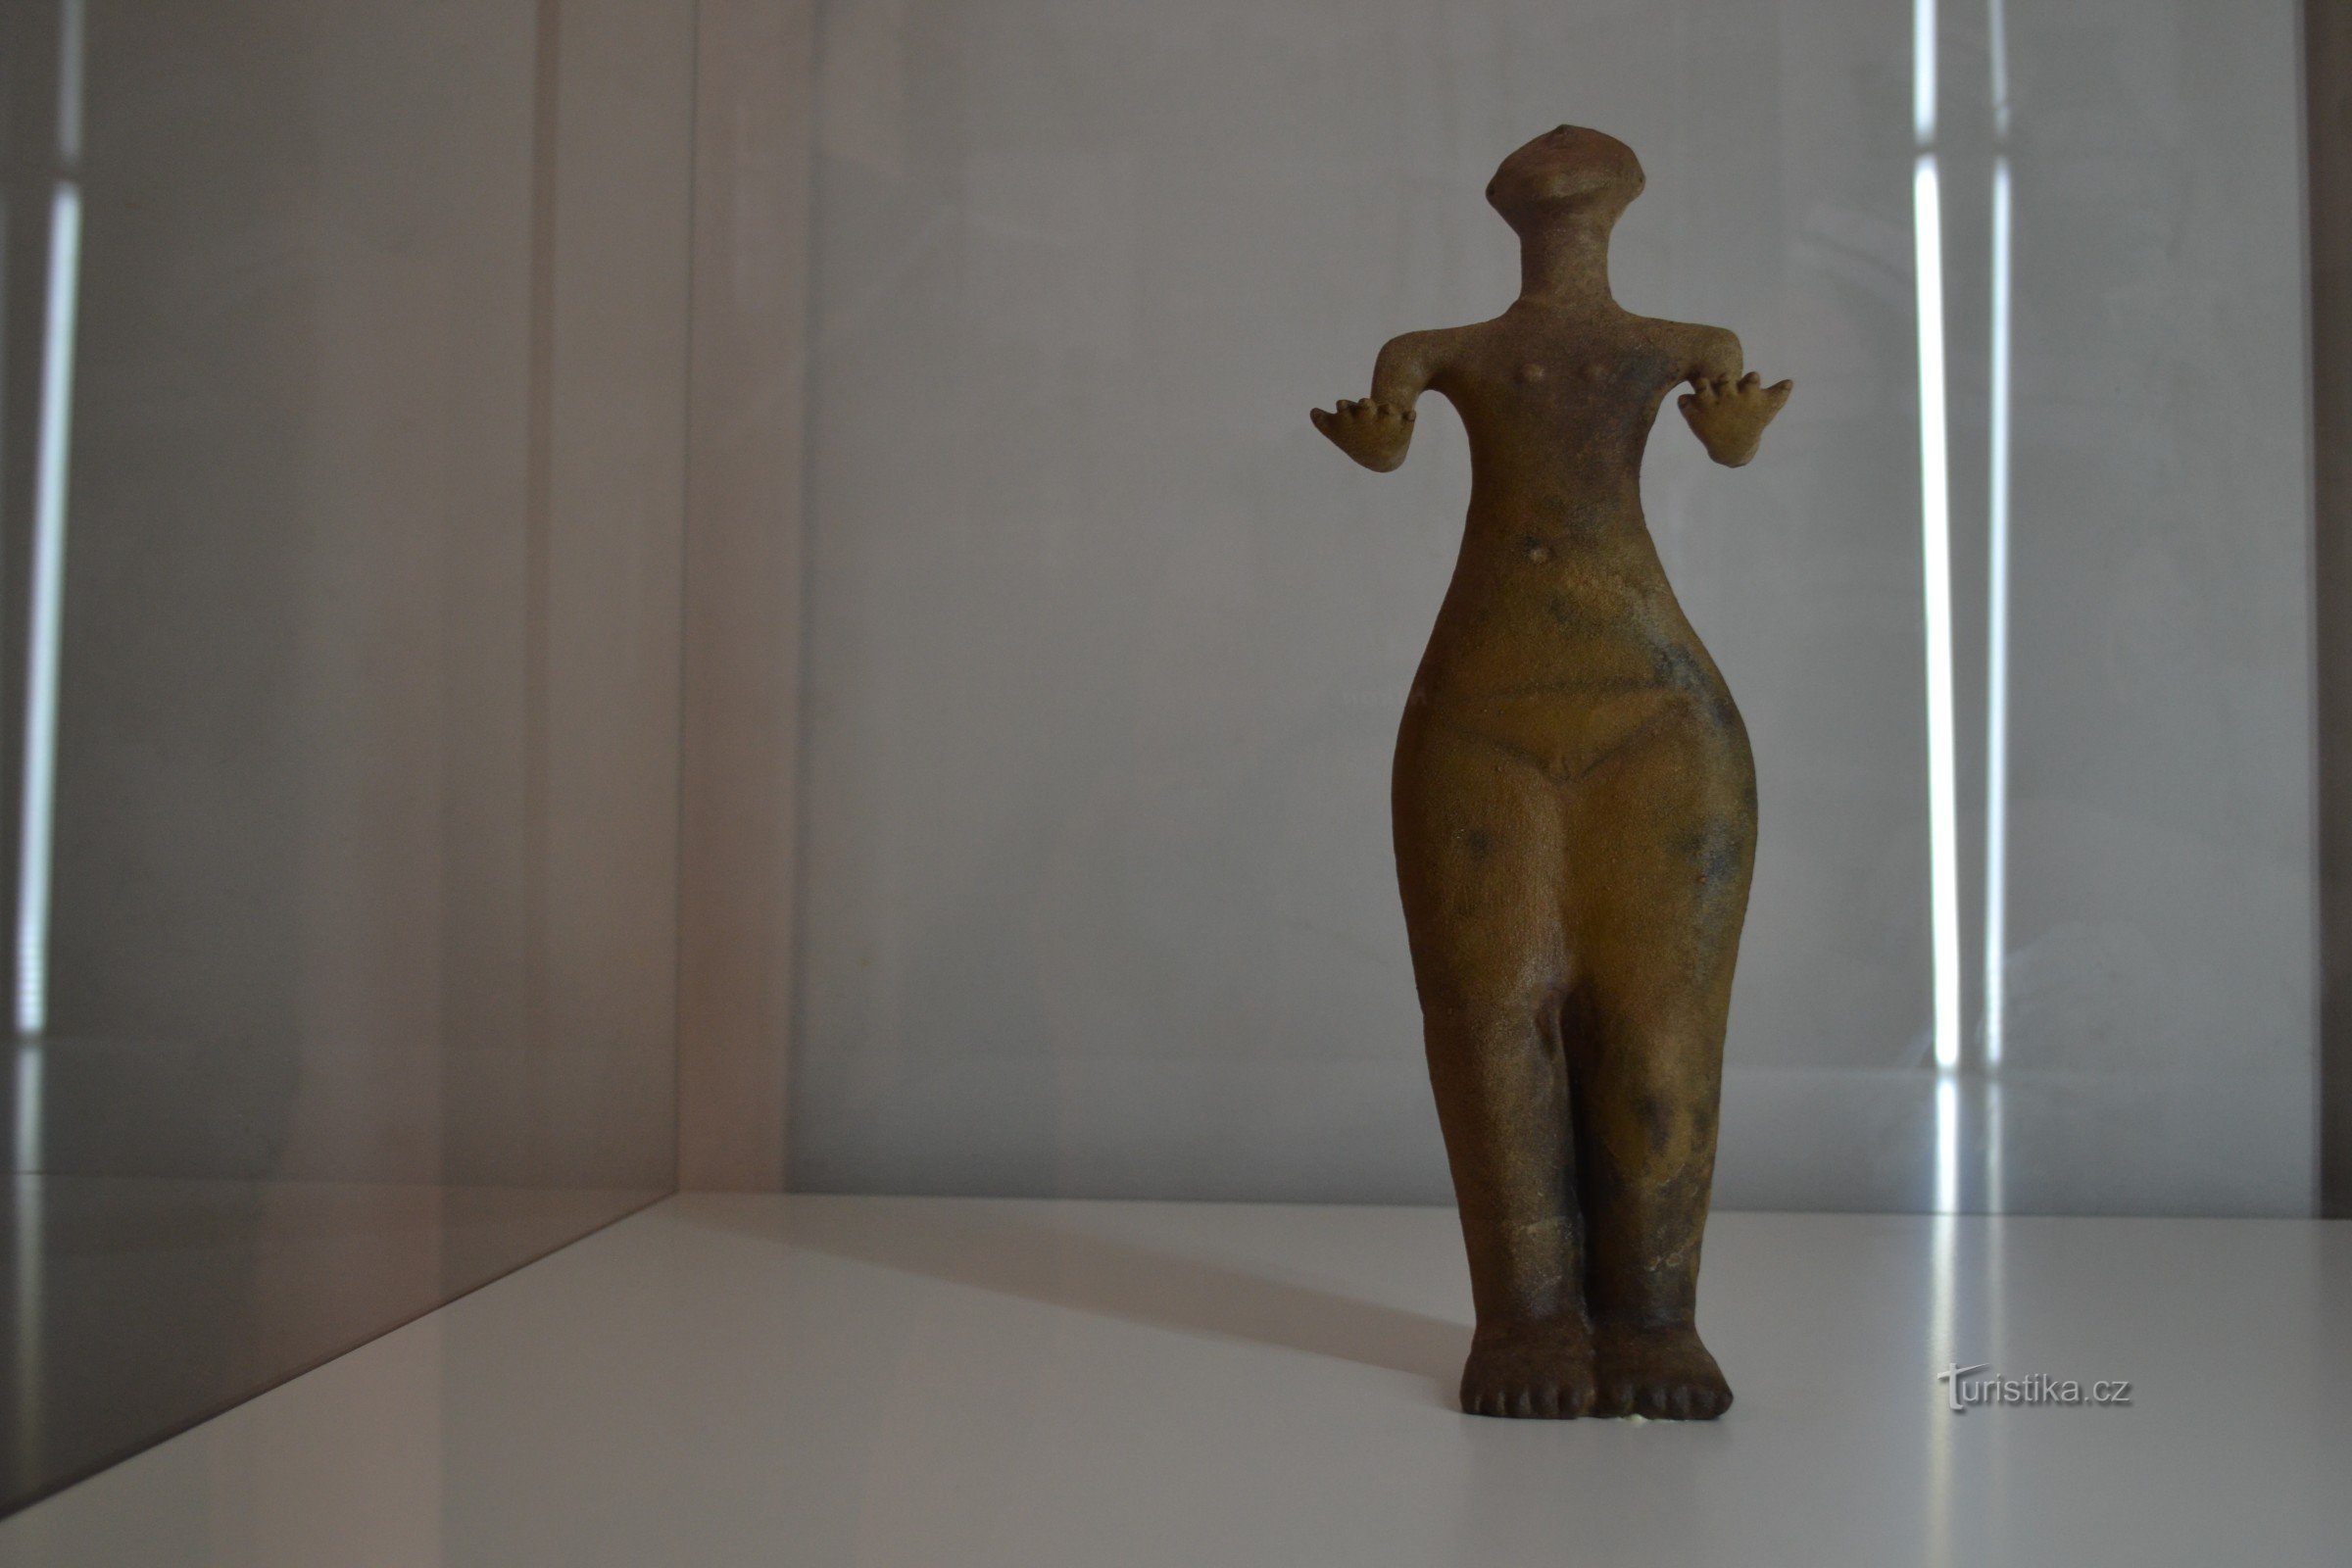 Statue af Venus i Przezámčí